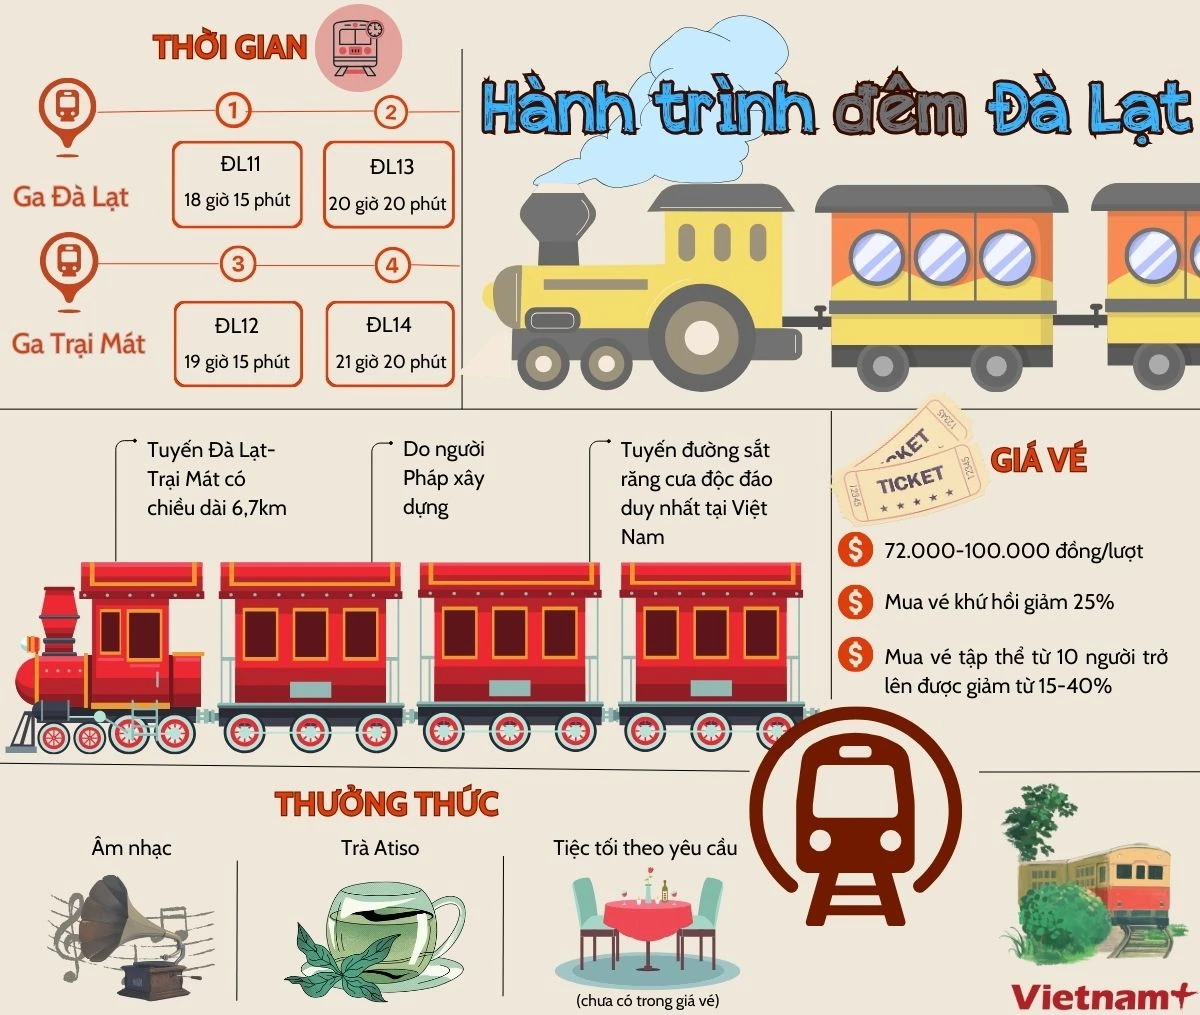 Trải nghiệm tuyến đường sắt răng cưa độc đáo duy nhất tại Việt Nam